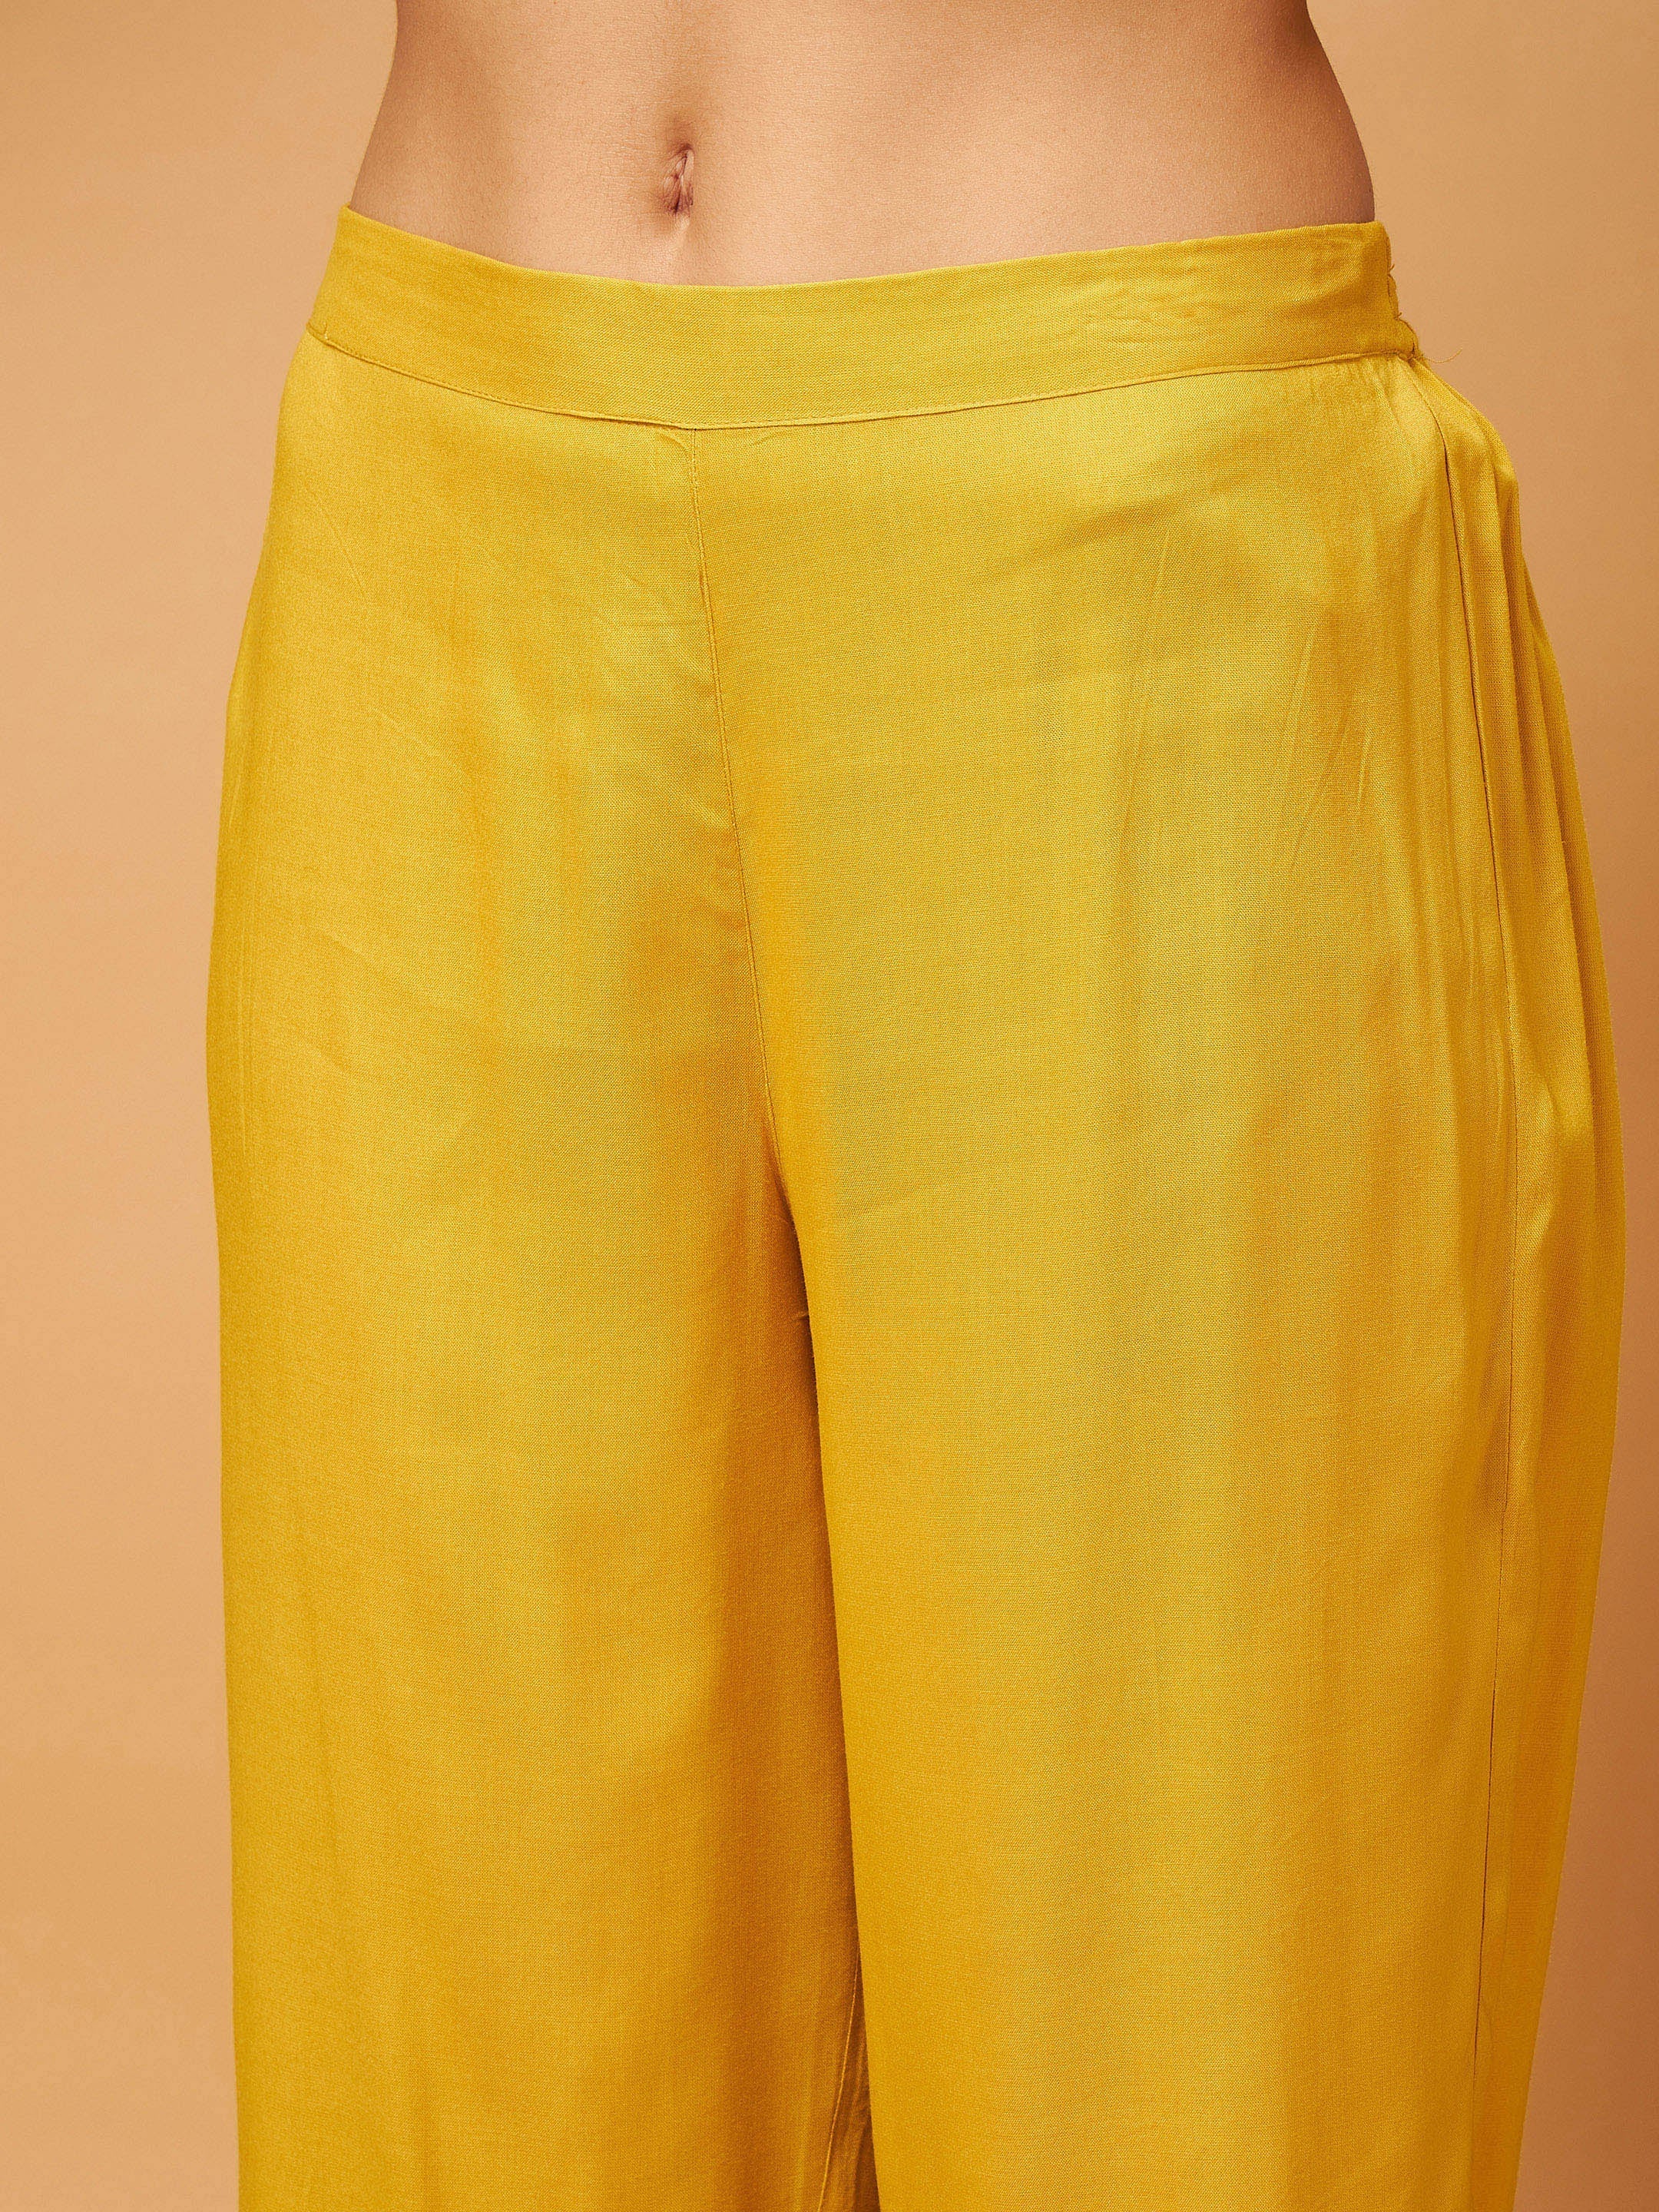 Women's Yellow Gota Embroidered Kurta with Pants - Lyush